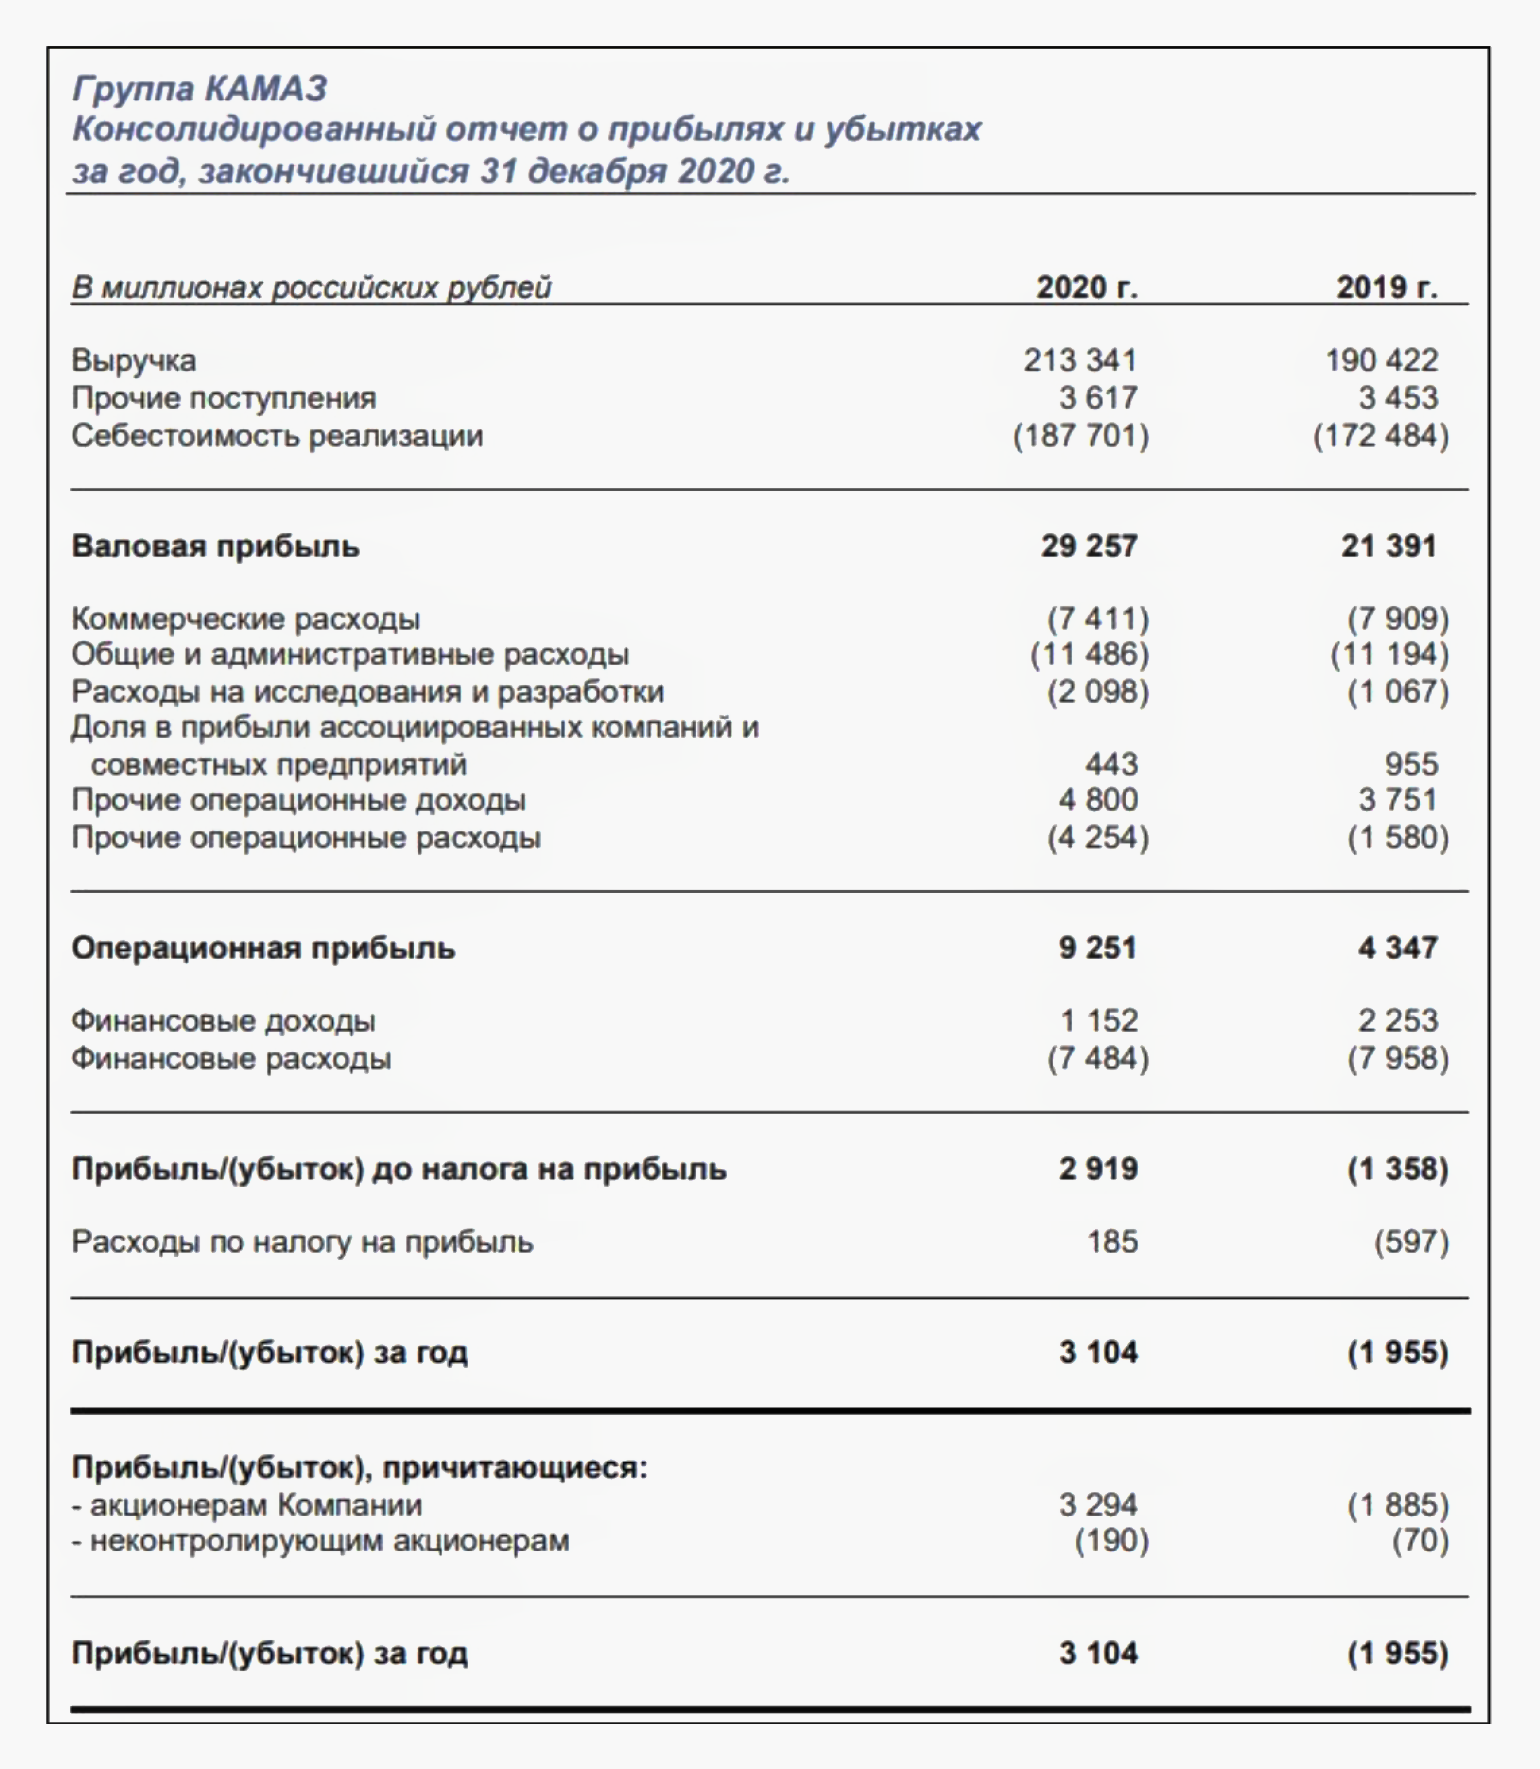 Отчет о финансовых результатах форма 2 и упрощенная форма отчета о результатах хозяйственной деятельности (скачать форму ОКУД 0710002)